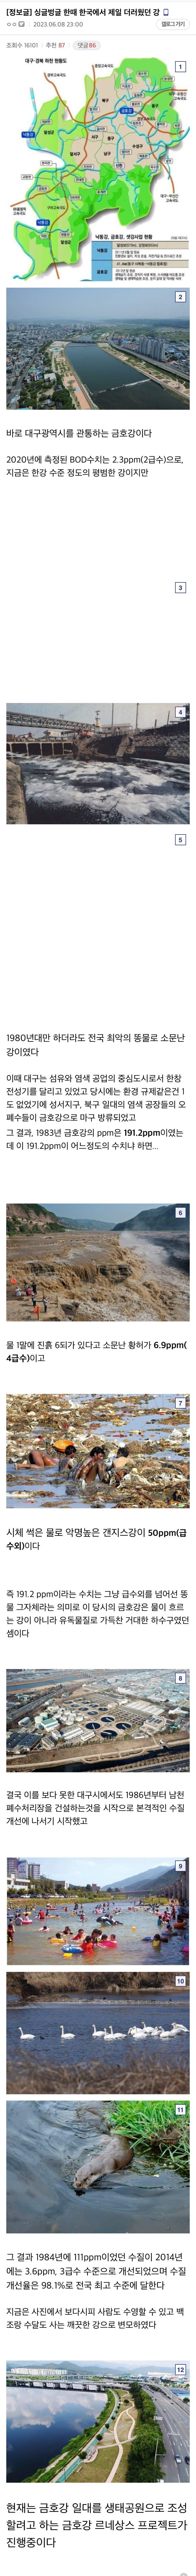 6 한때 한국에서 제일 더러웠던 강.jpg